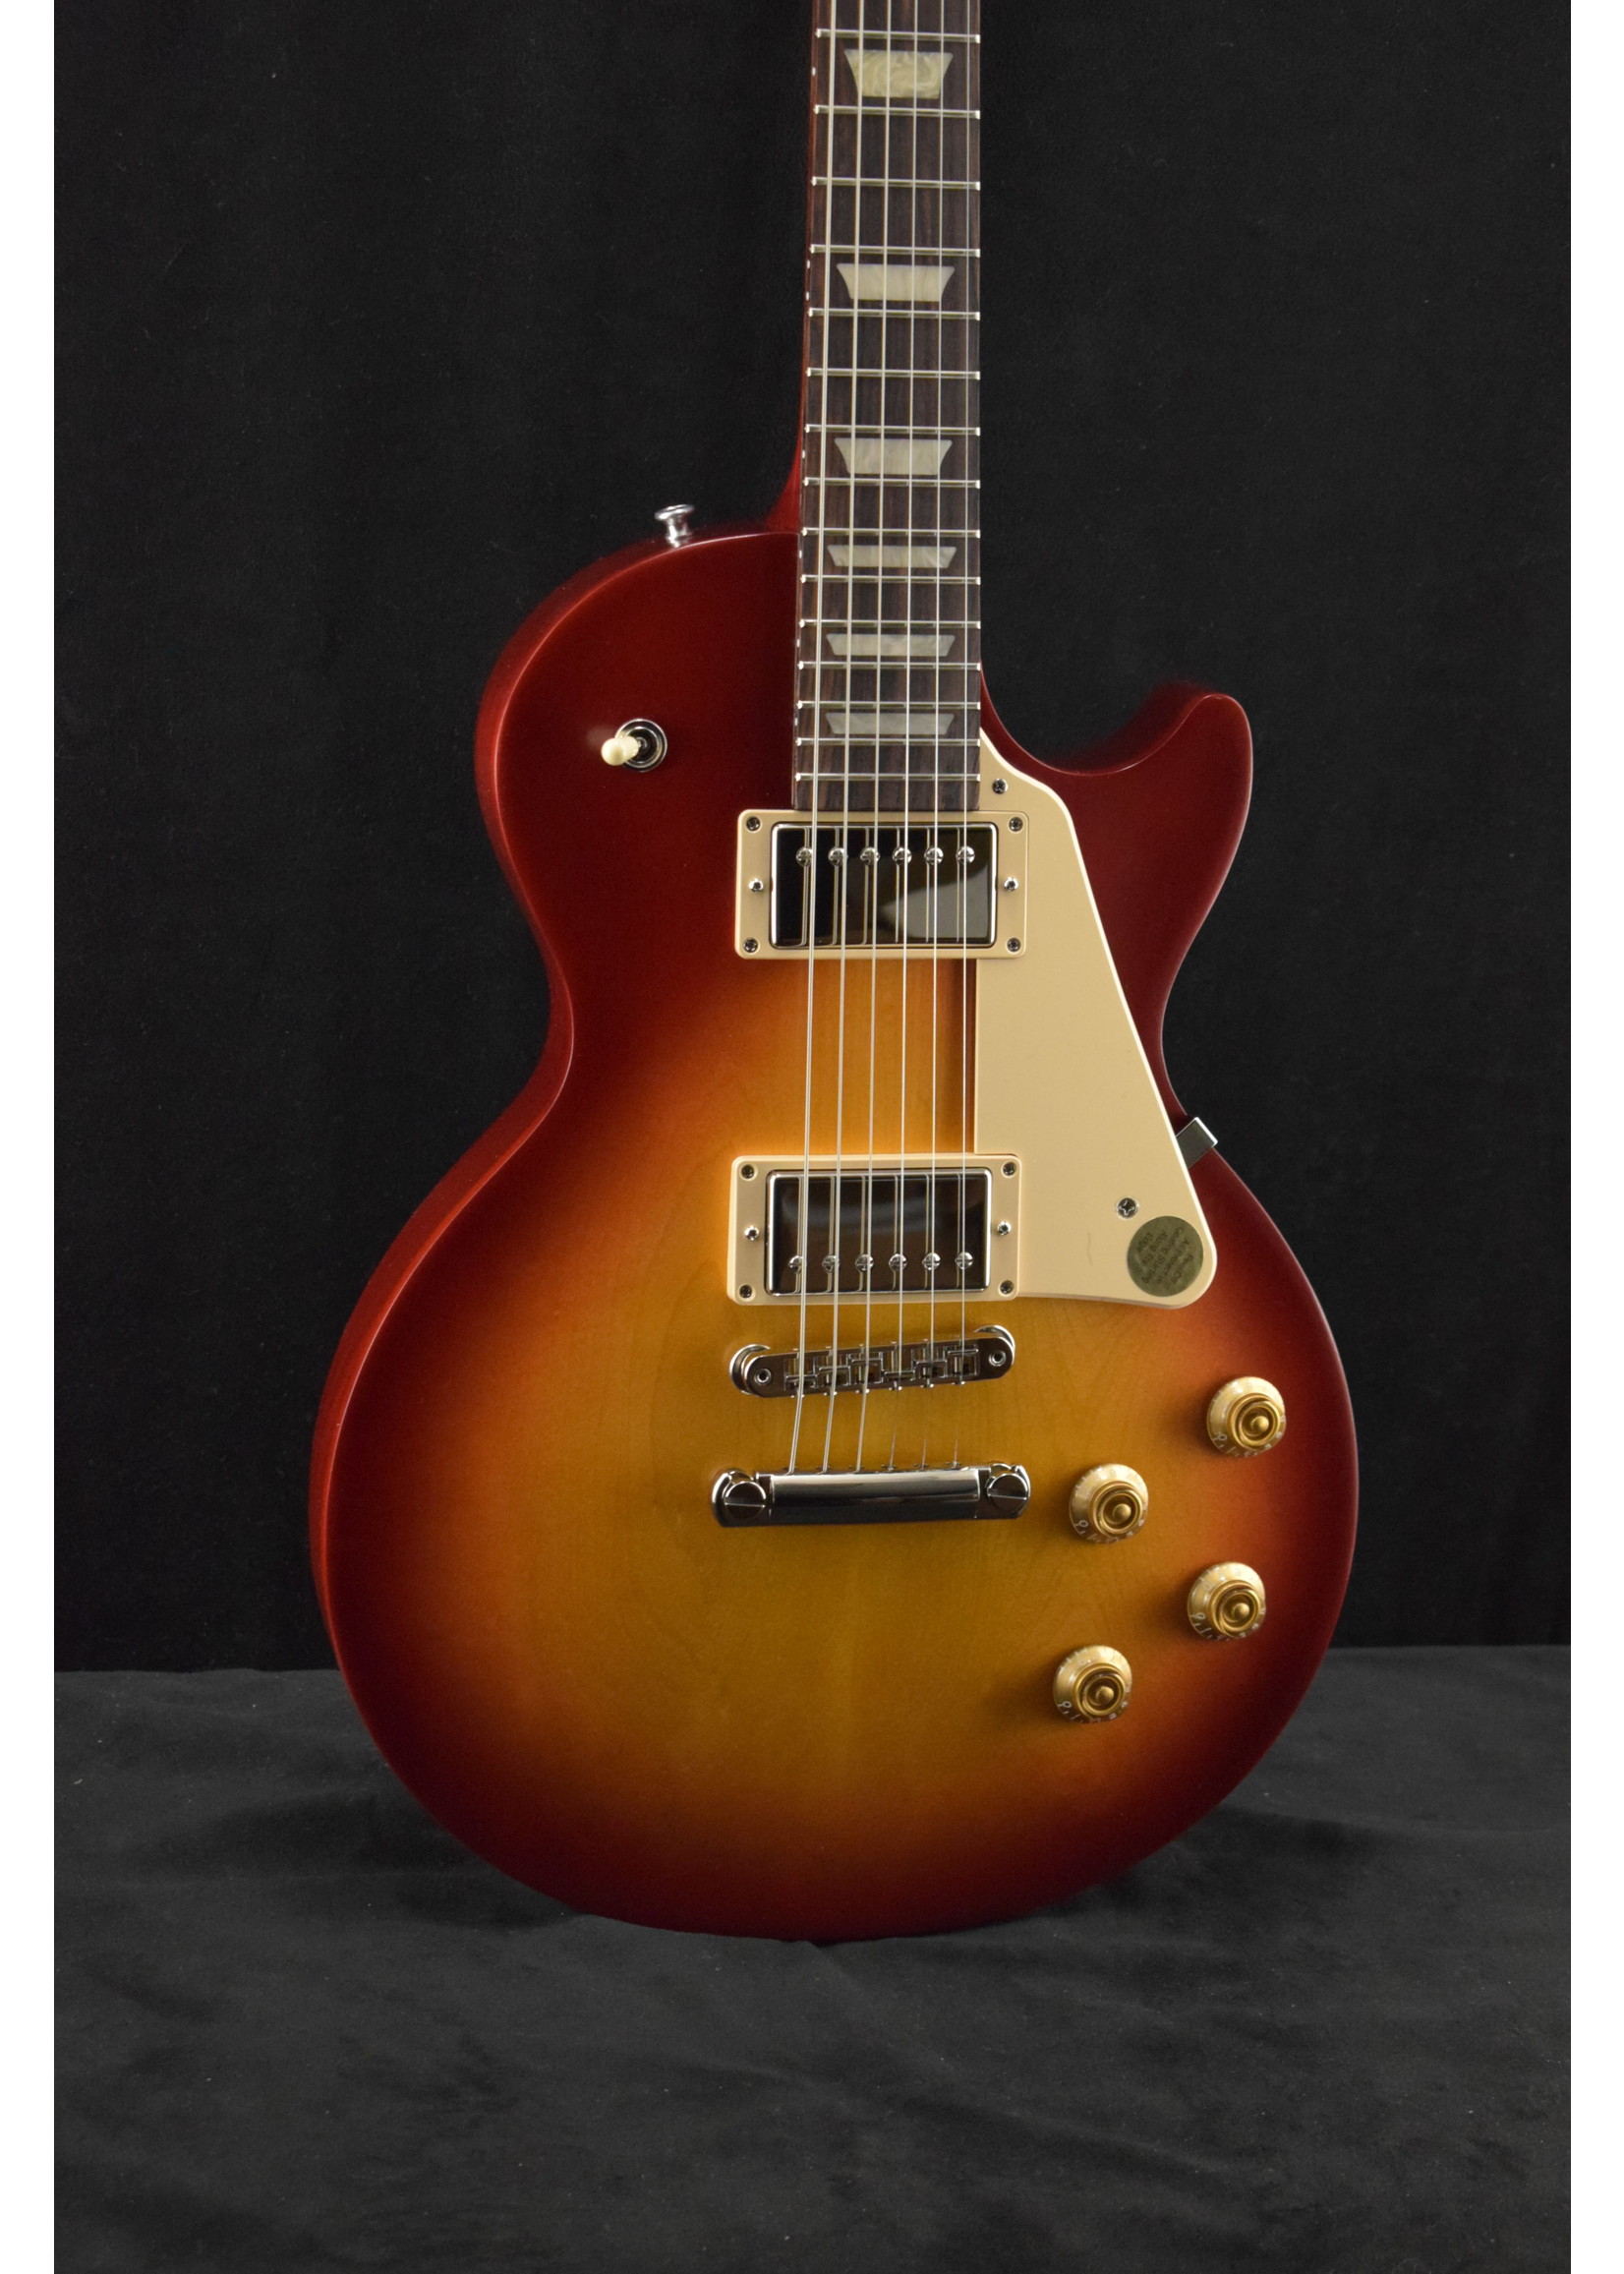 Gibson Gibson Les Paul Tribute Satin Cherry Sunburst